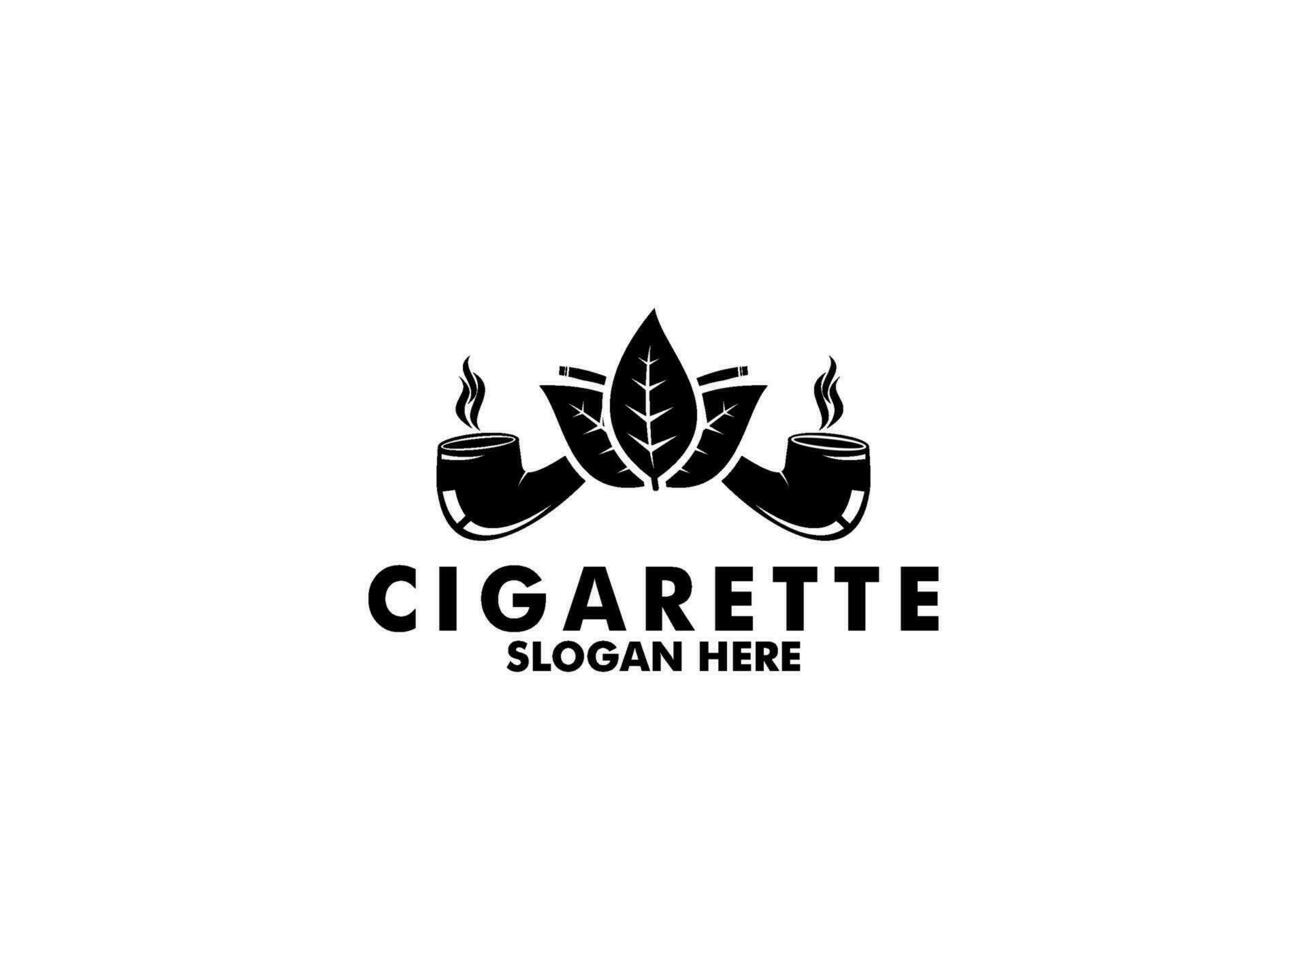 sigaret logo met pijp, tabak, logo vector. premie sigaar rook logo ontwerp sjabloon vector